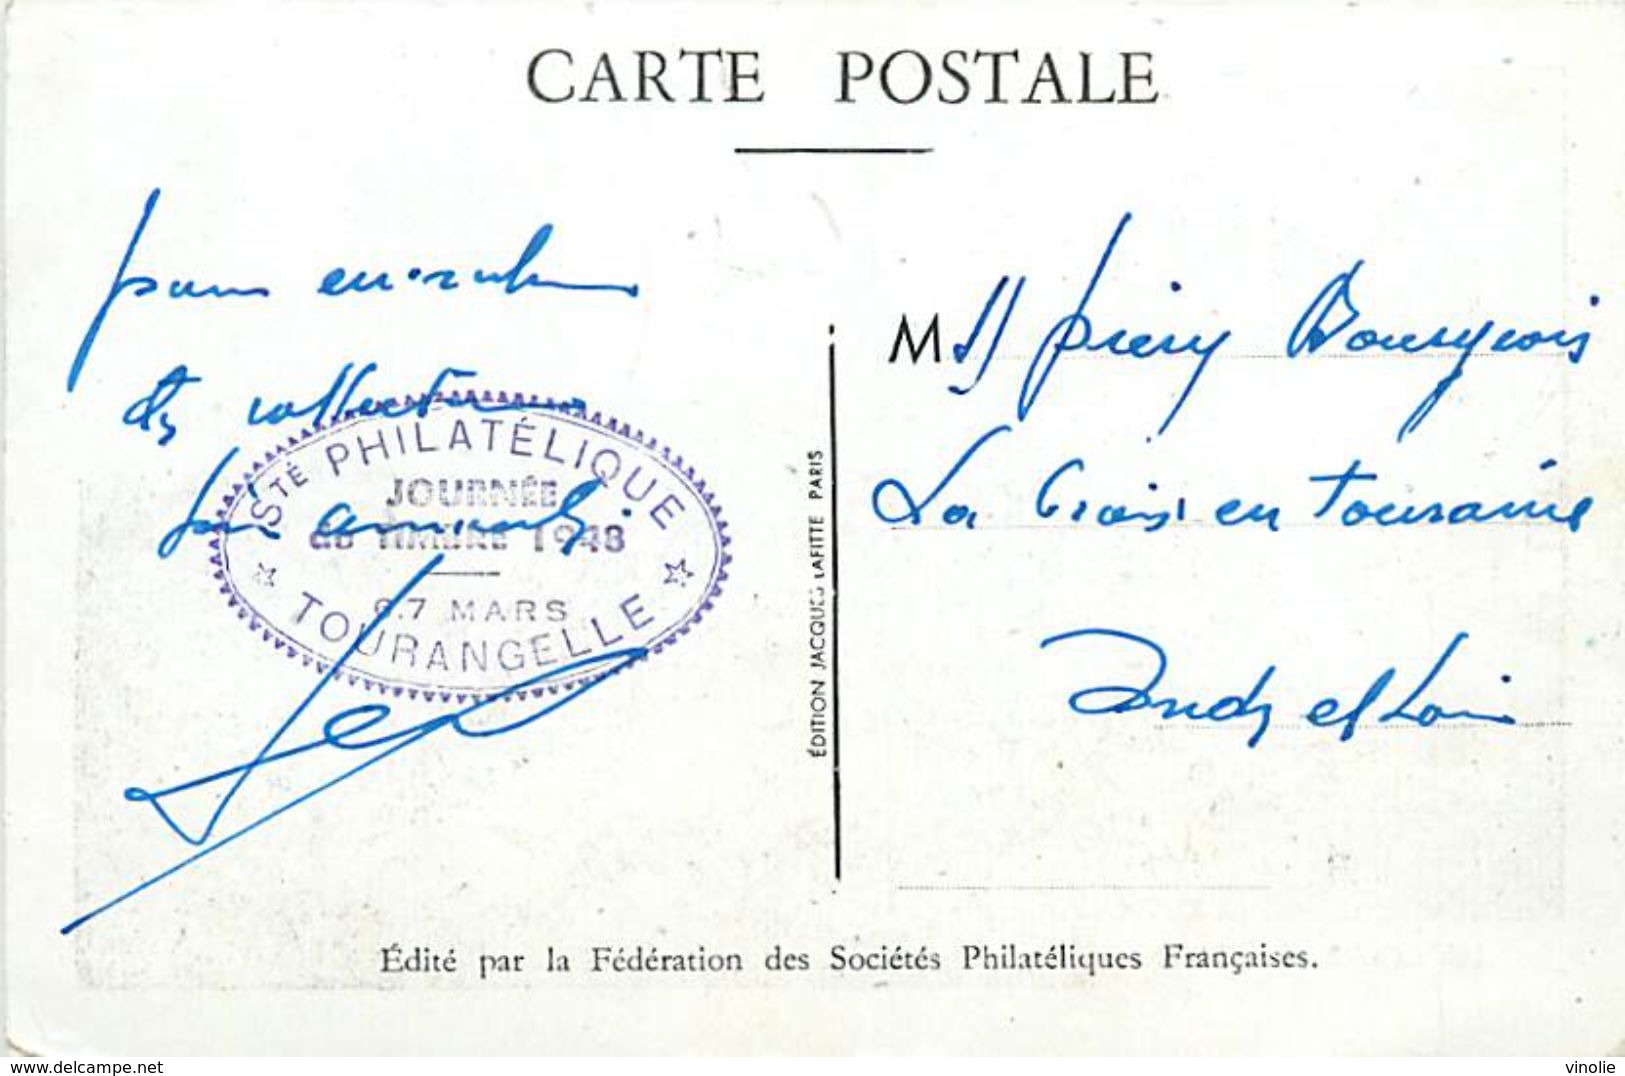 A-17.9504 : CARTE JOURNEE DU TIMBRE  1948. 6-7 MARS TOURS INDRE ET LOIRE ETIENNE ARAGO . LA LOIRE - Lettres & Documents